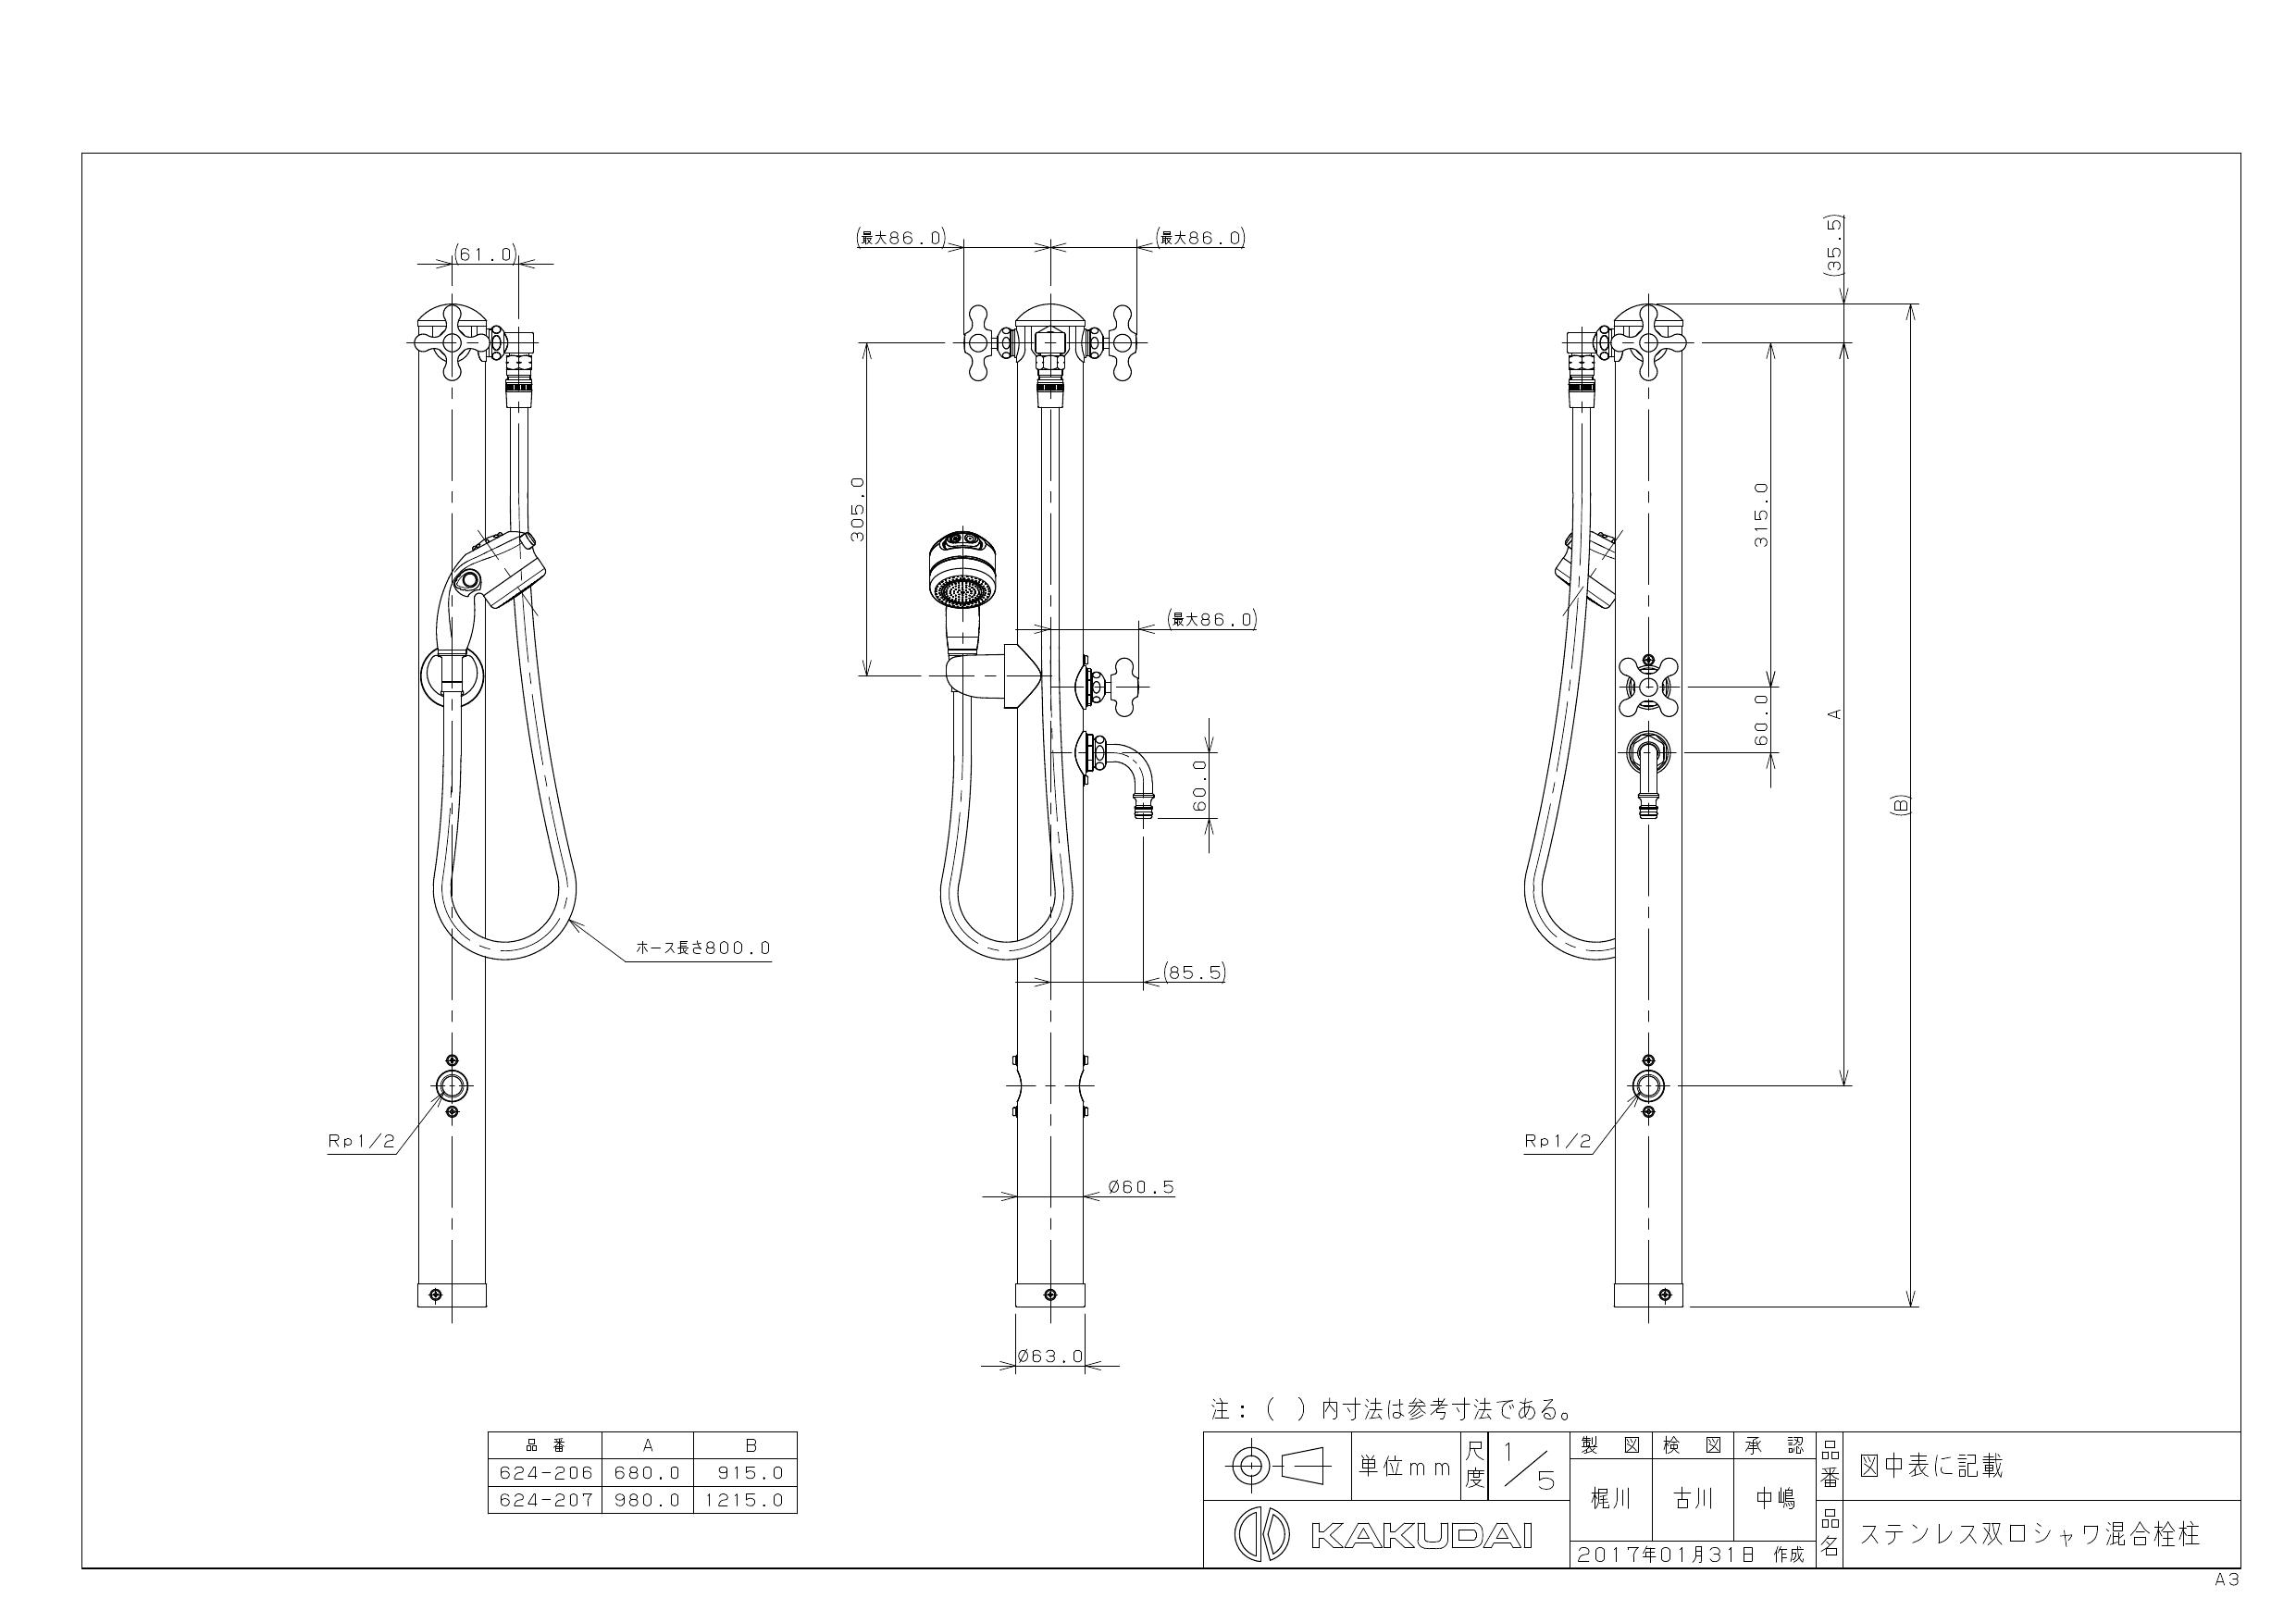 カクダイ ステンレス双口シャワー混合栓柱 ペット用 624-206 通販